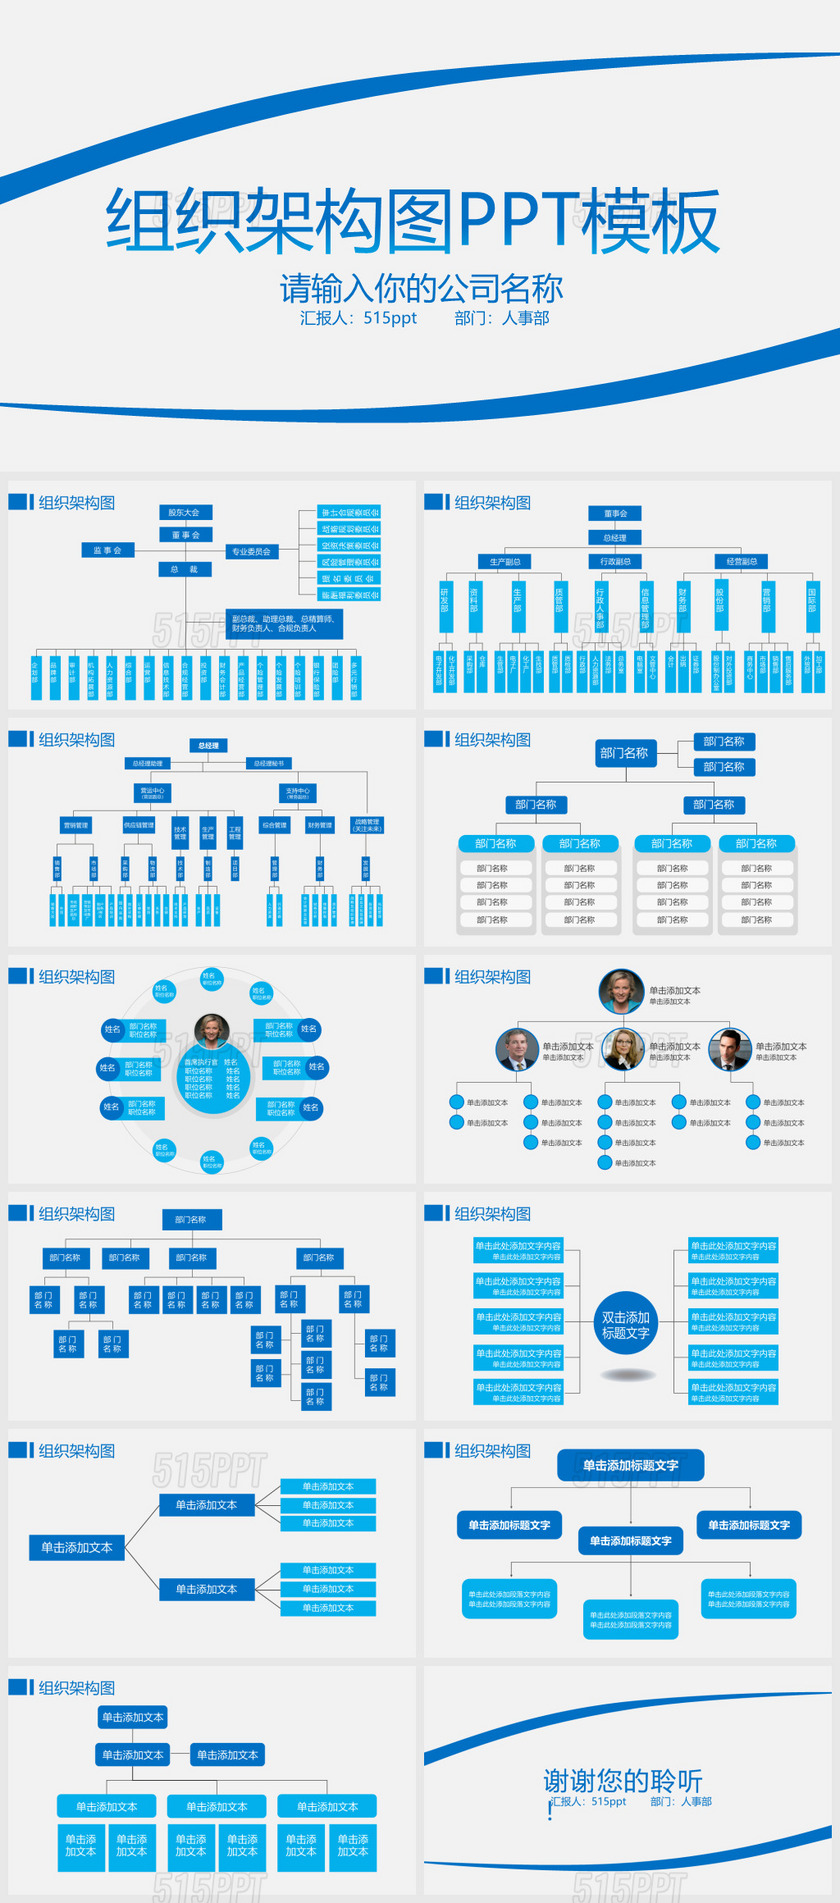 23 蓝色简约企业组织架构图PPT模板——PPT模板